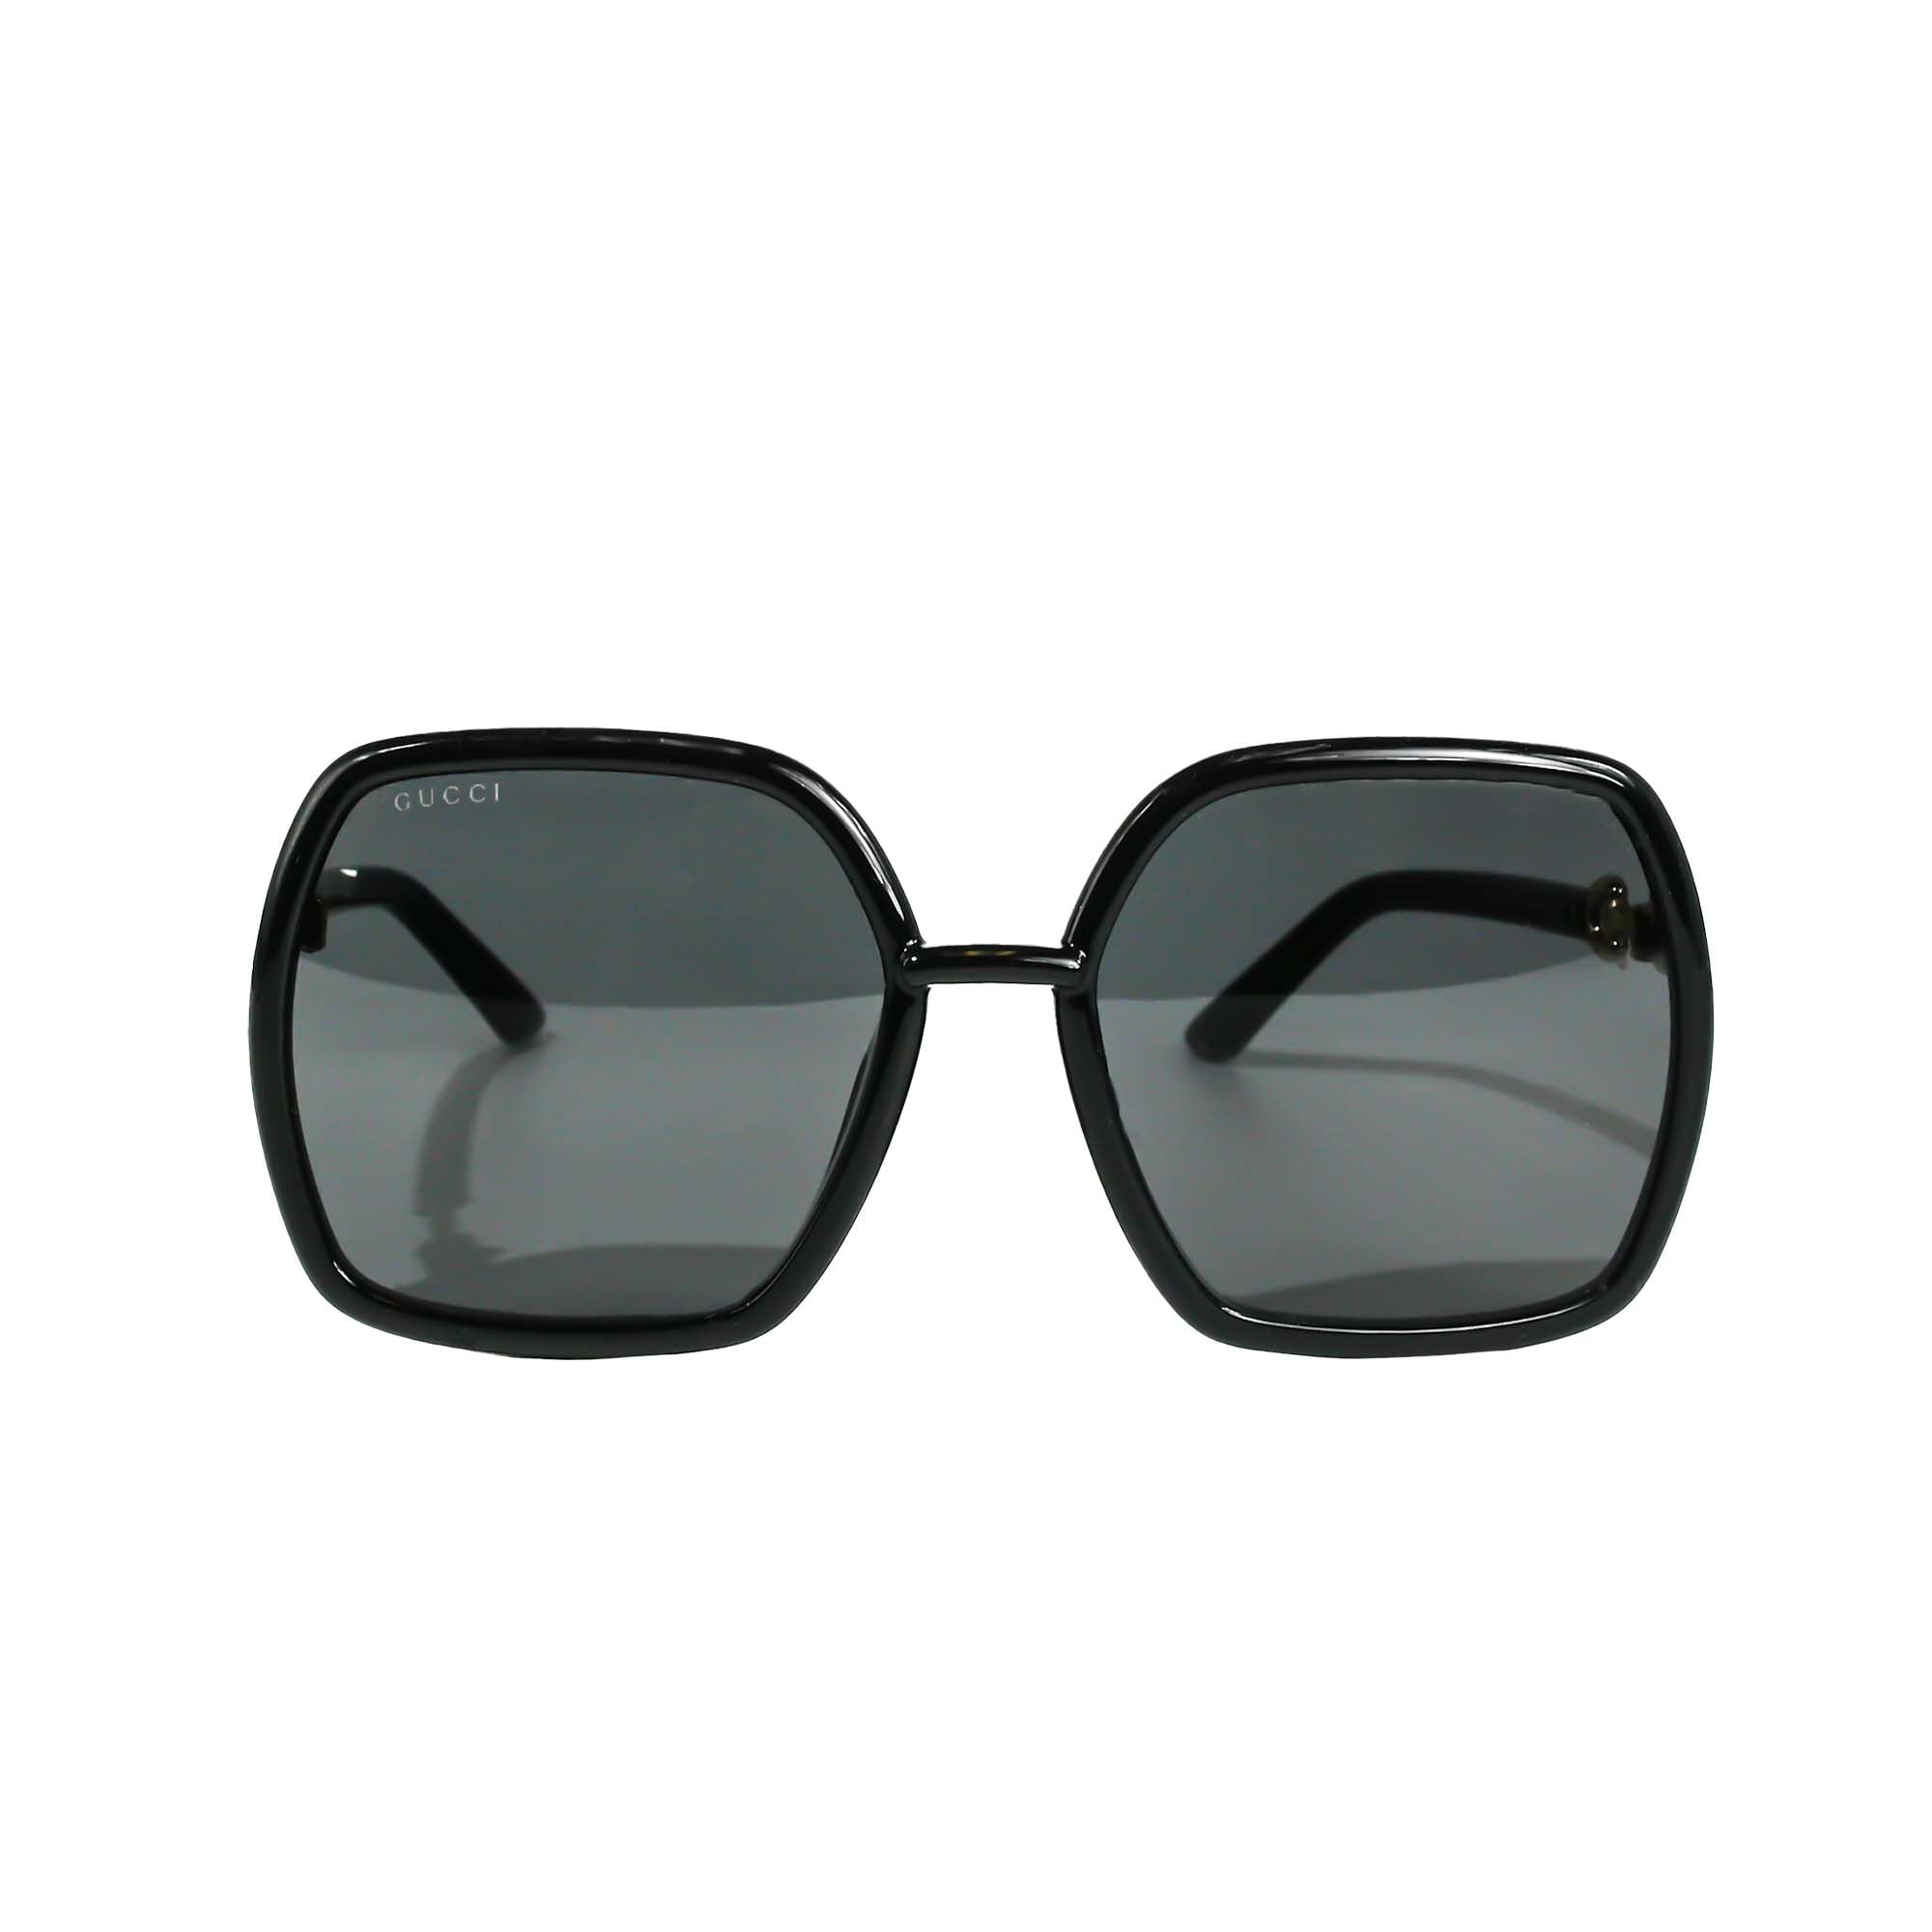 Goggle glasses Gucci Black in Plastic - 38907917